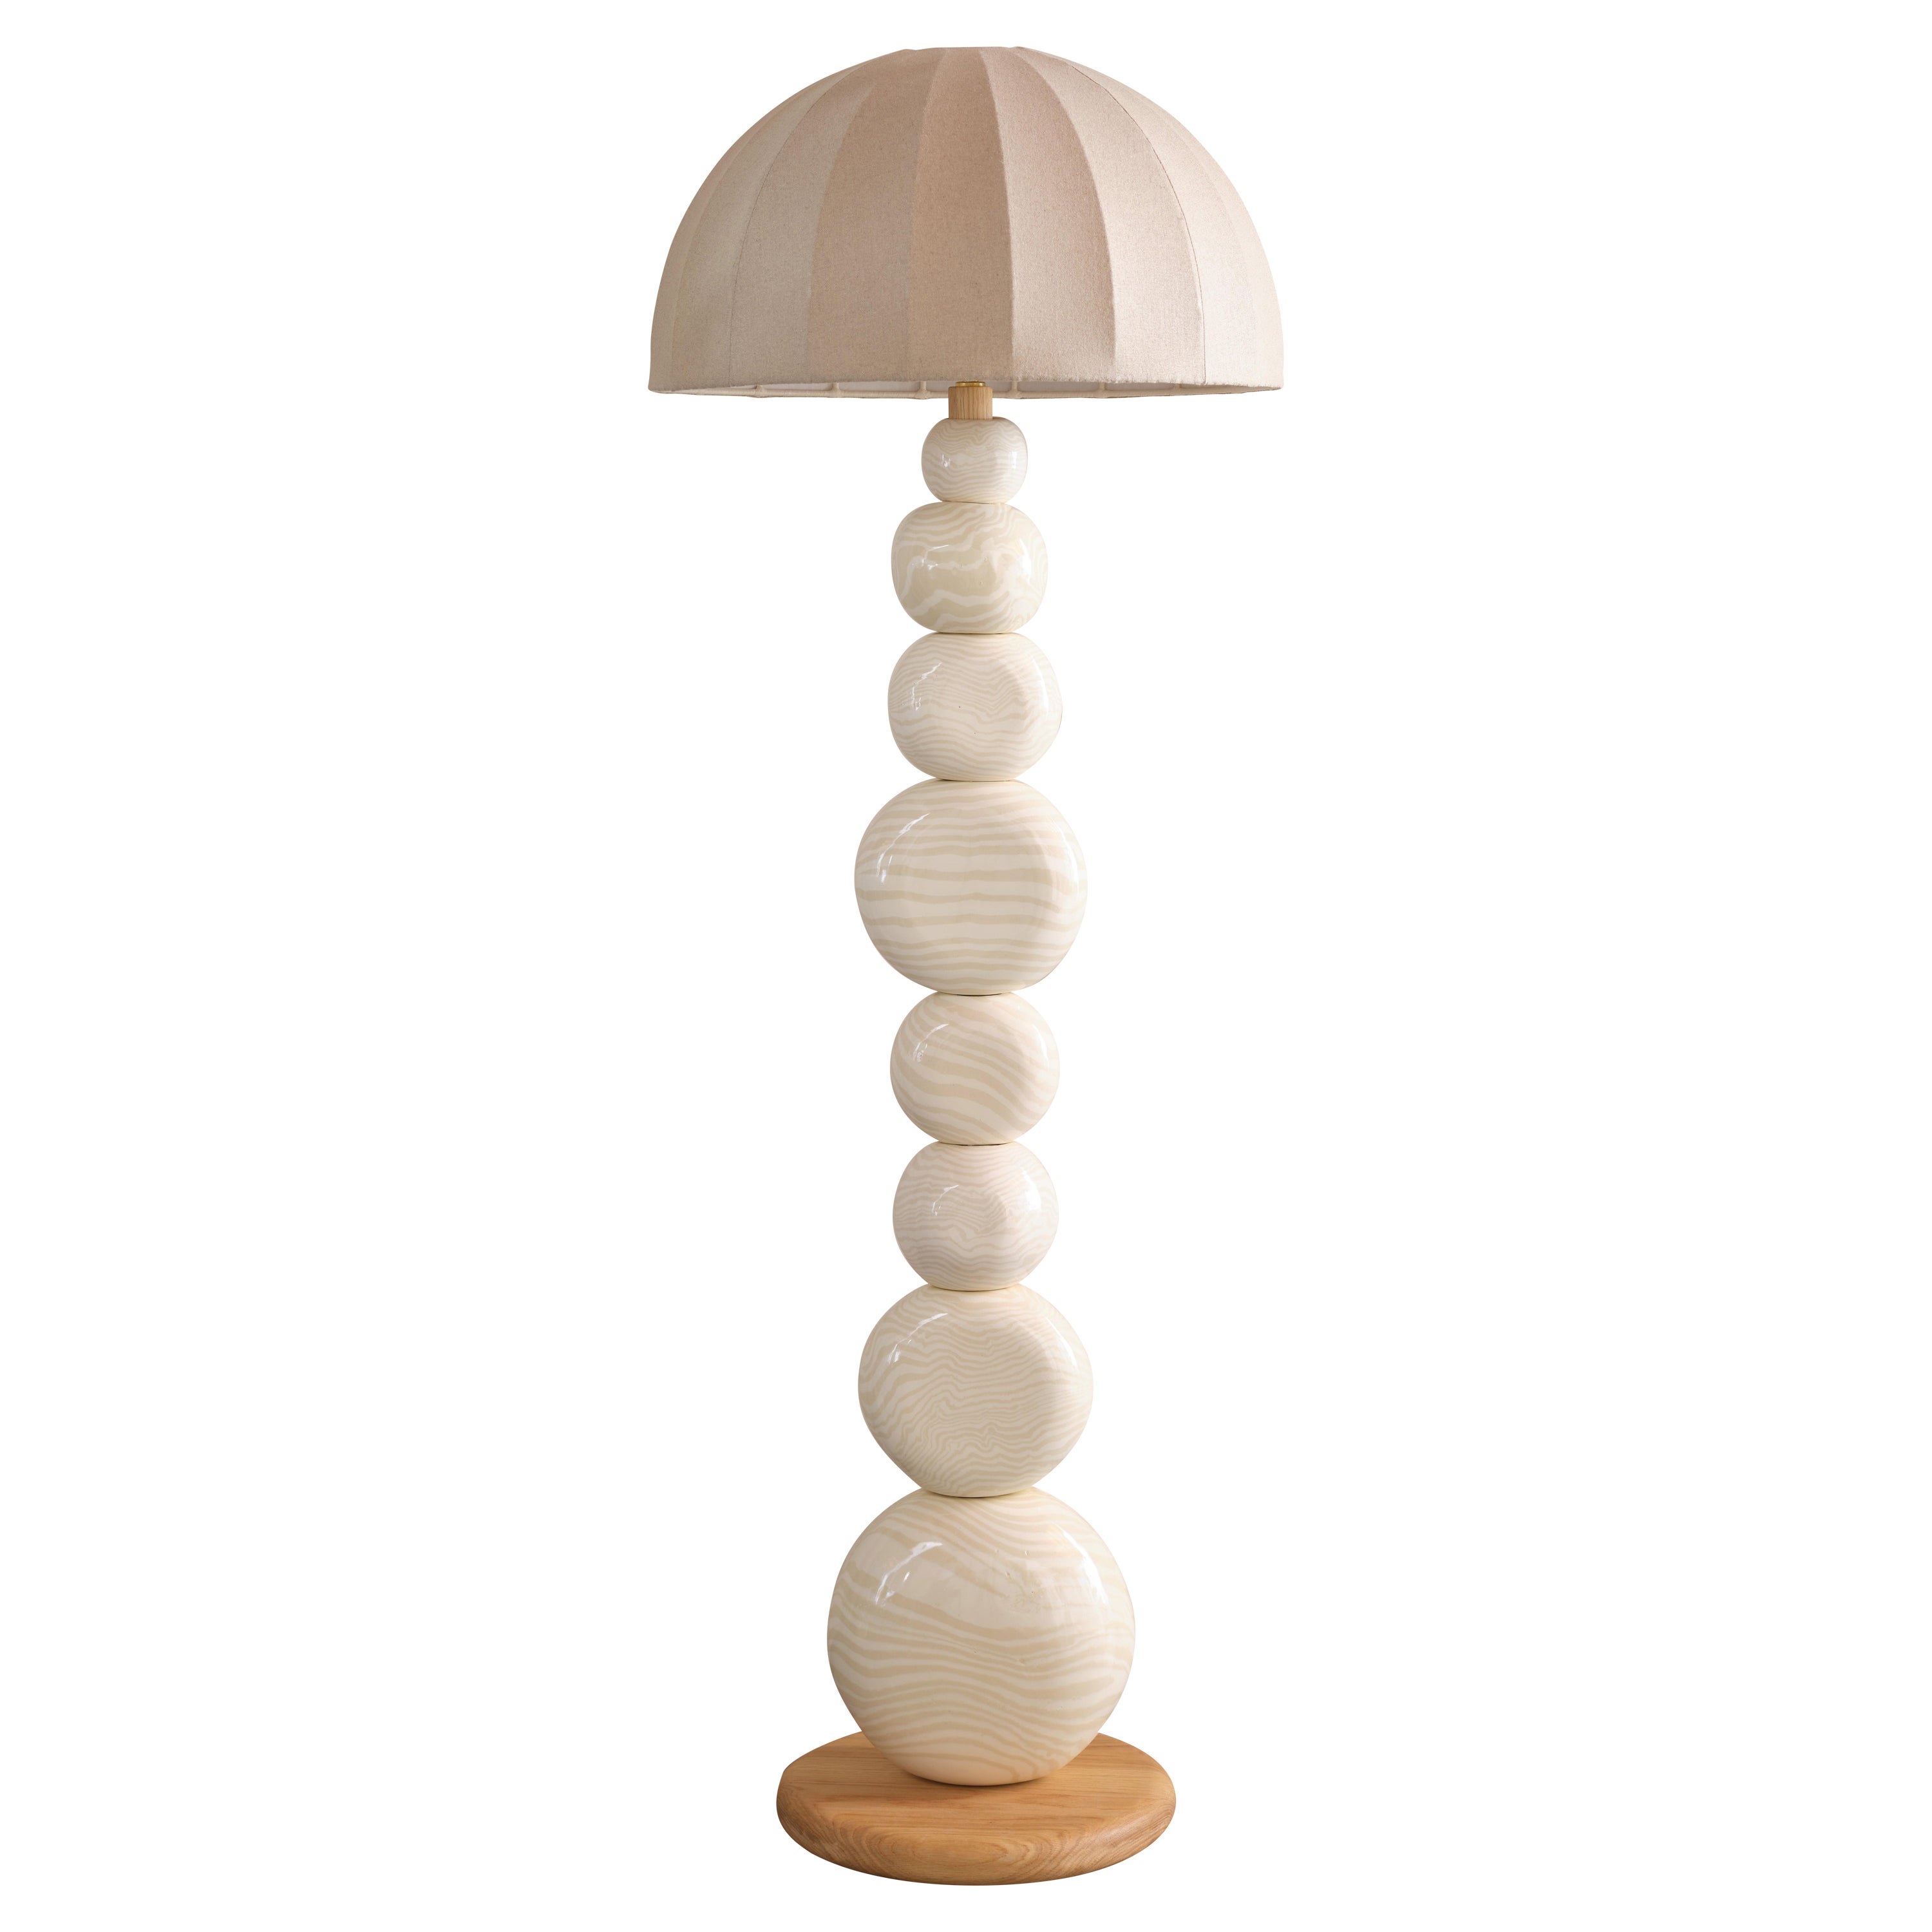 Henry Holland Studio Handmade Oatmeal and White Ceramic Sphere Floor Lamp